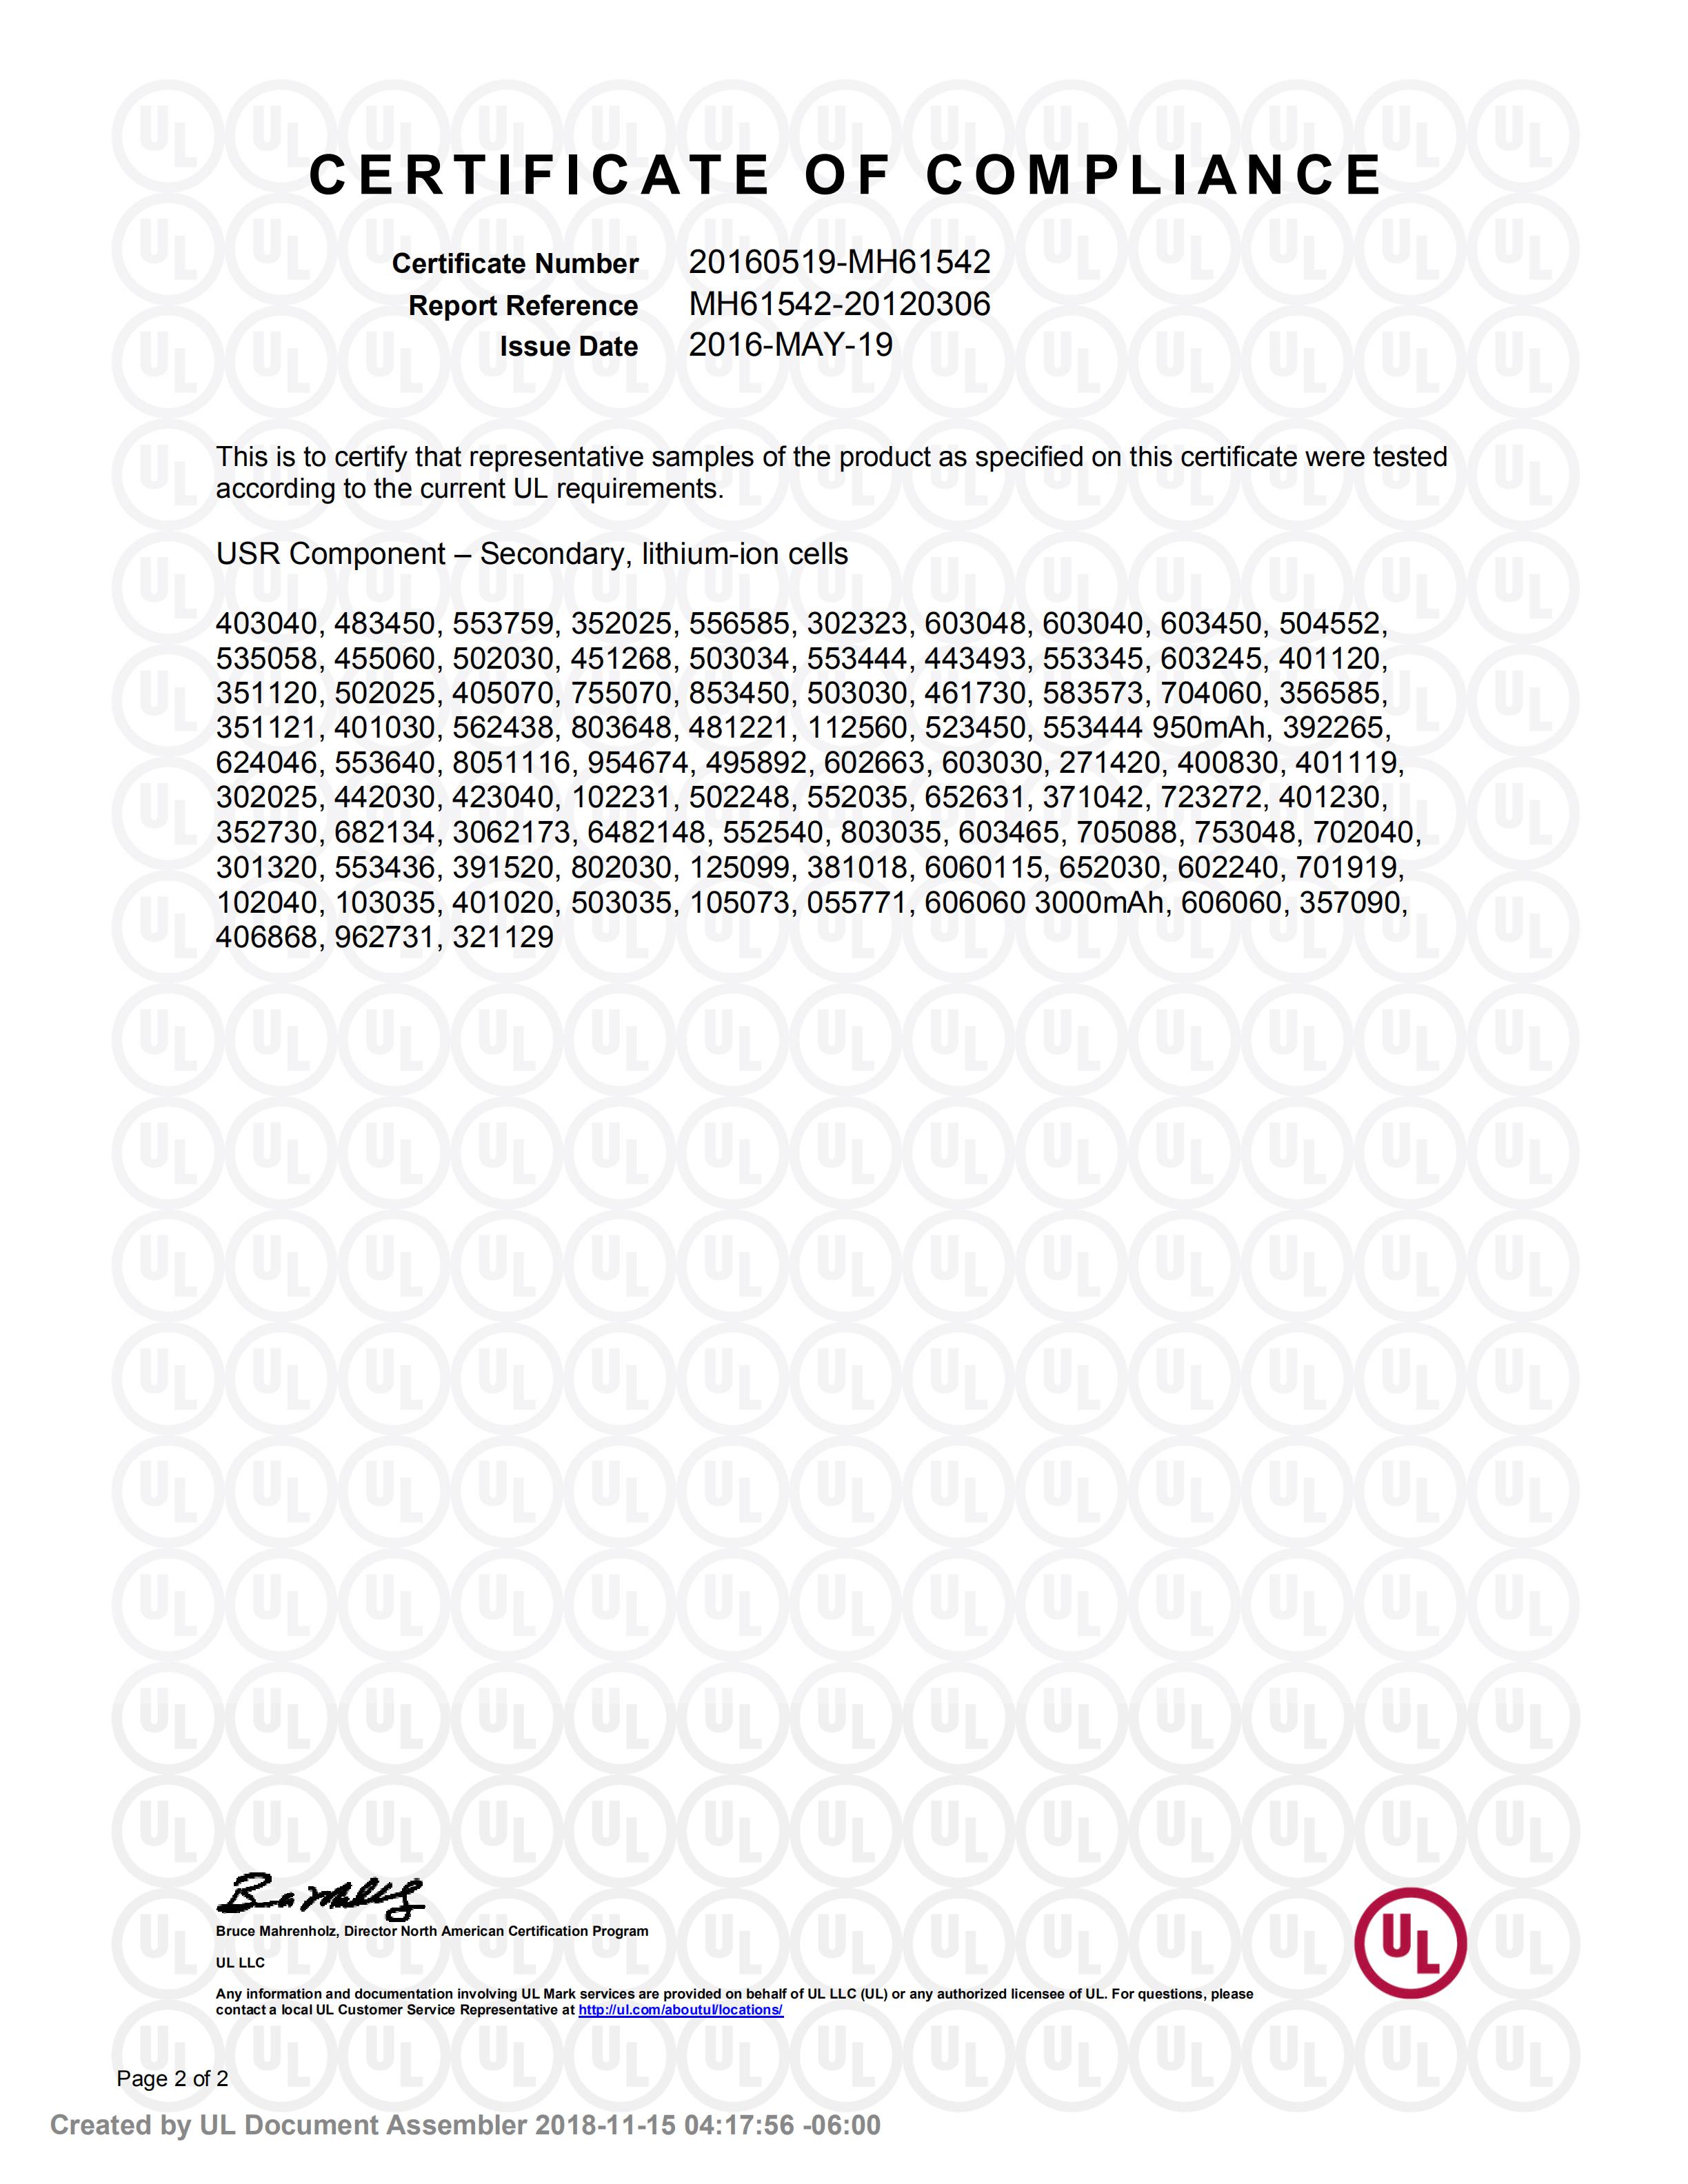 A&S Power UL1642 Certification